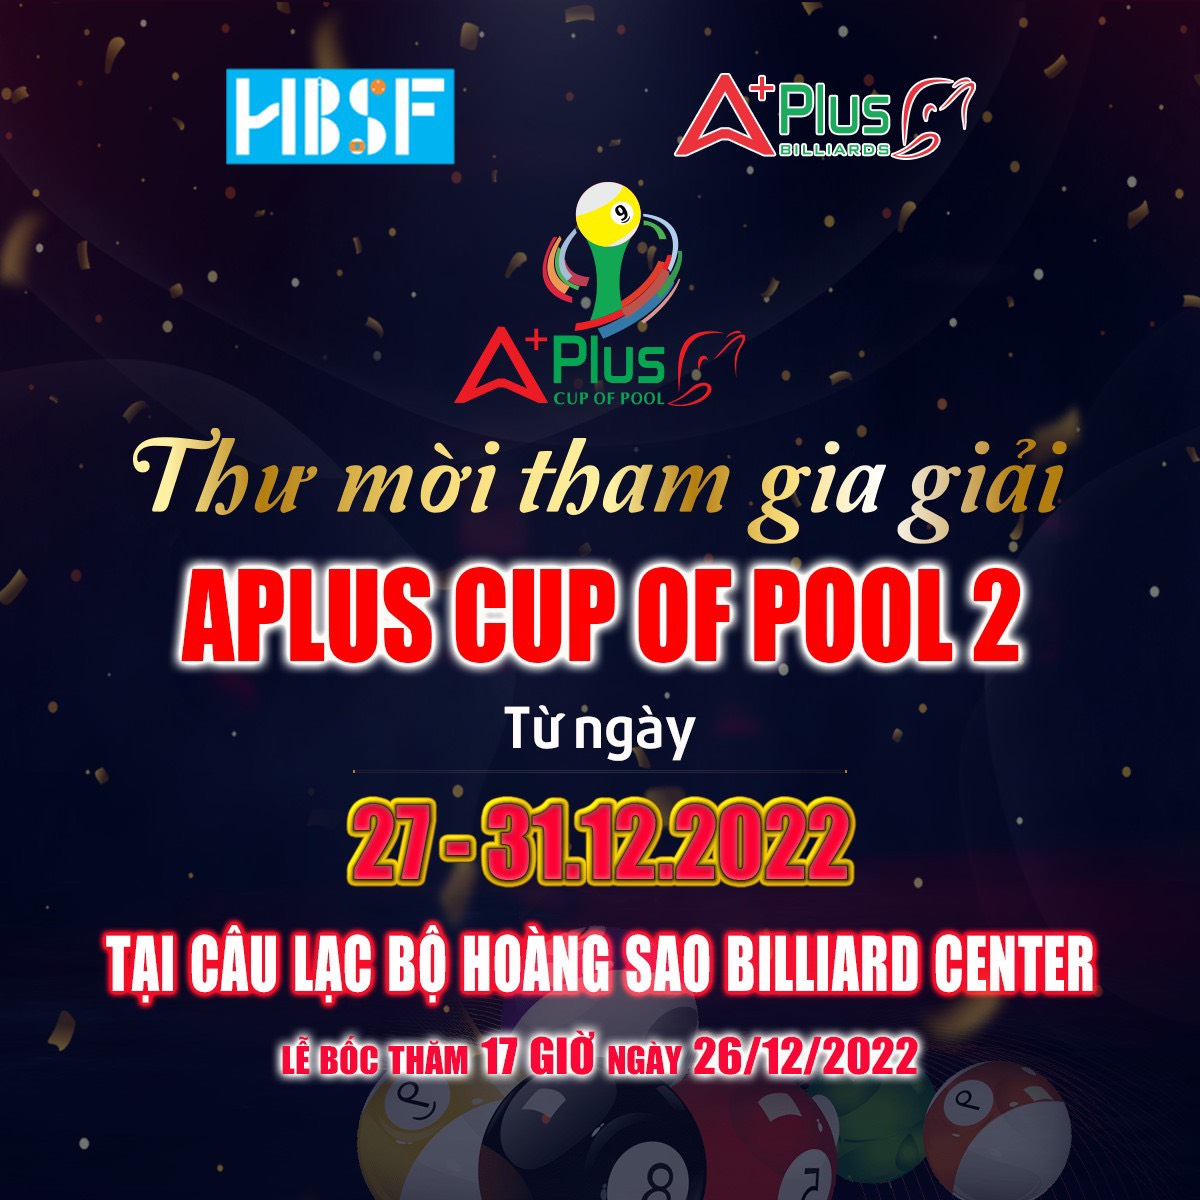 Aplus Cup of Pool 2 : Danh sách đầy đủ các VĐV đăng ký giải đấu